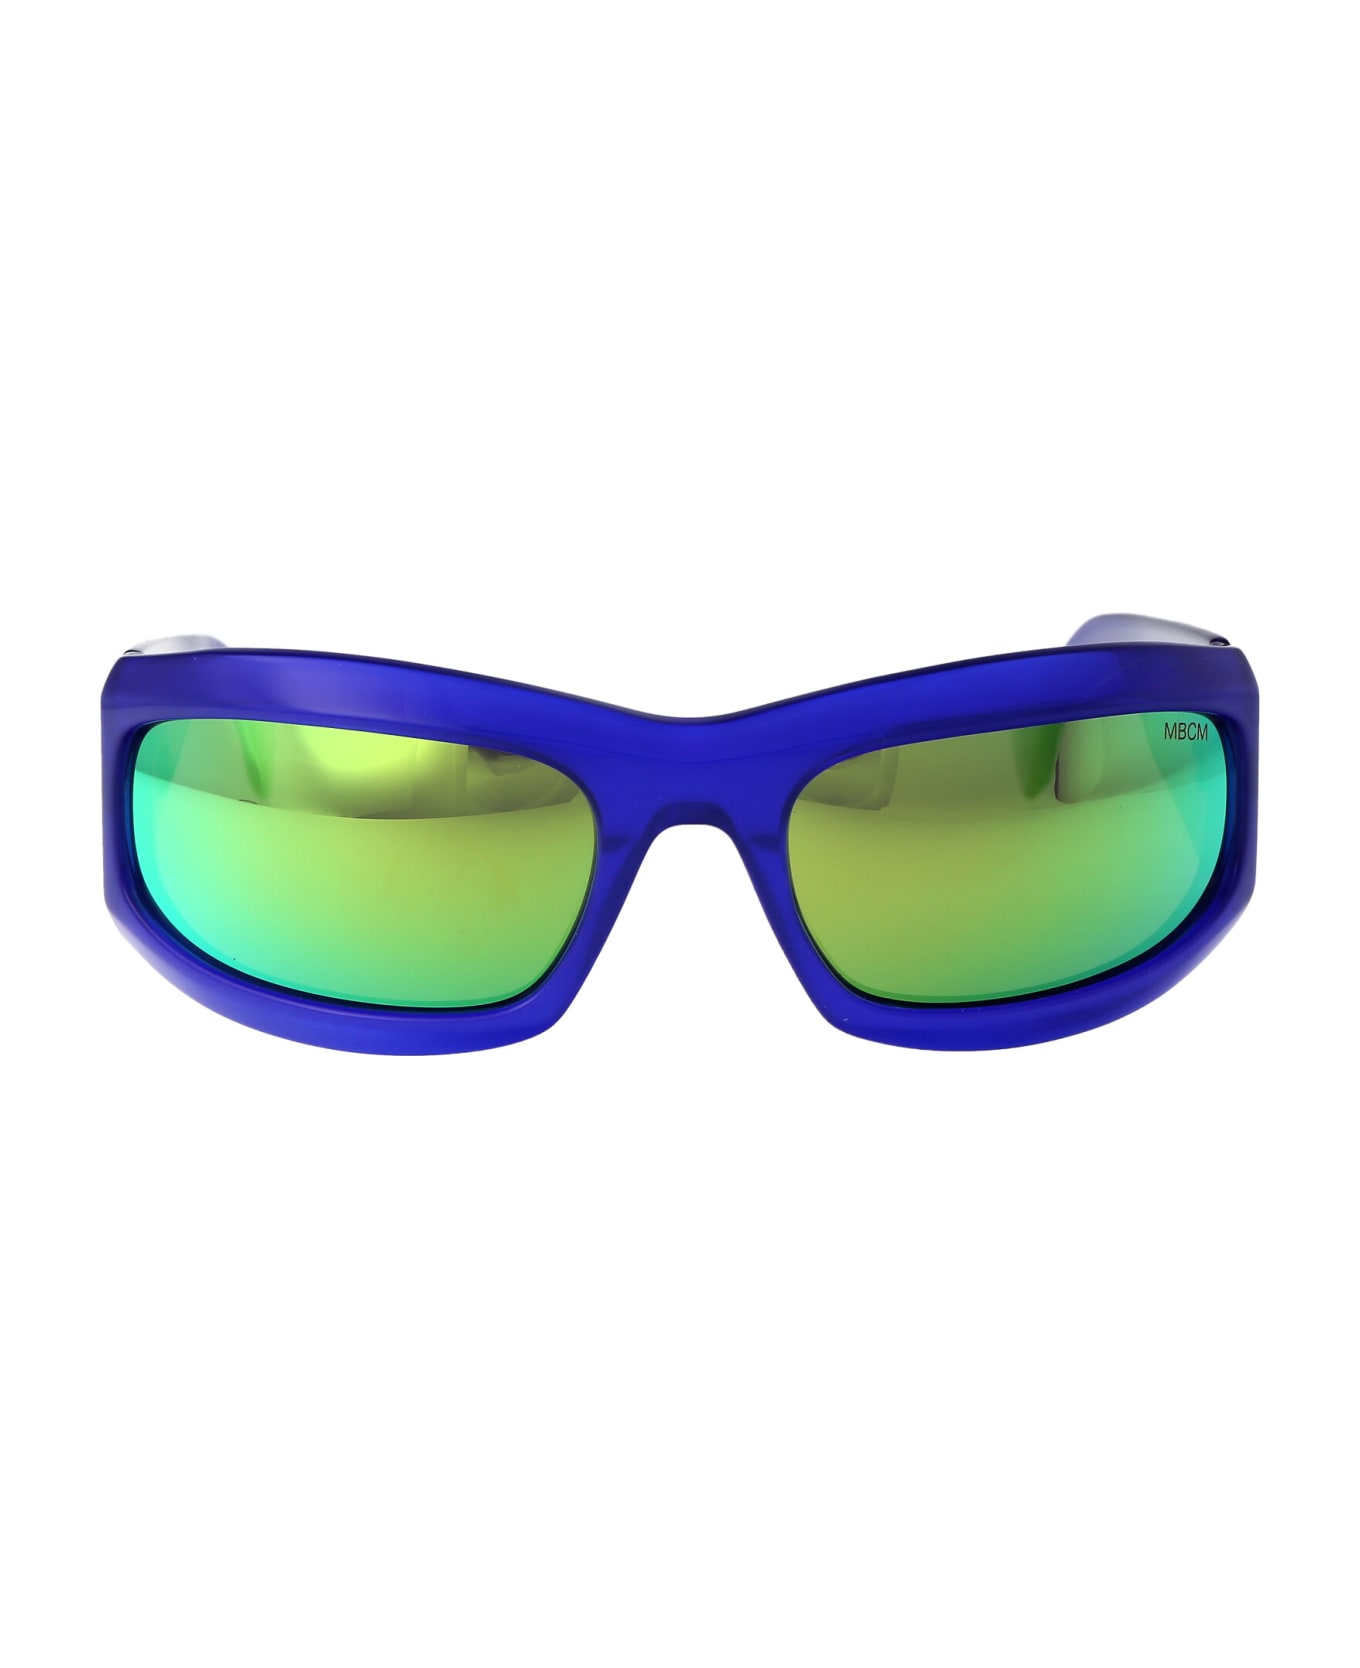 Marcelo Burlon Catemu Sunglasses - 4555 BLUE